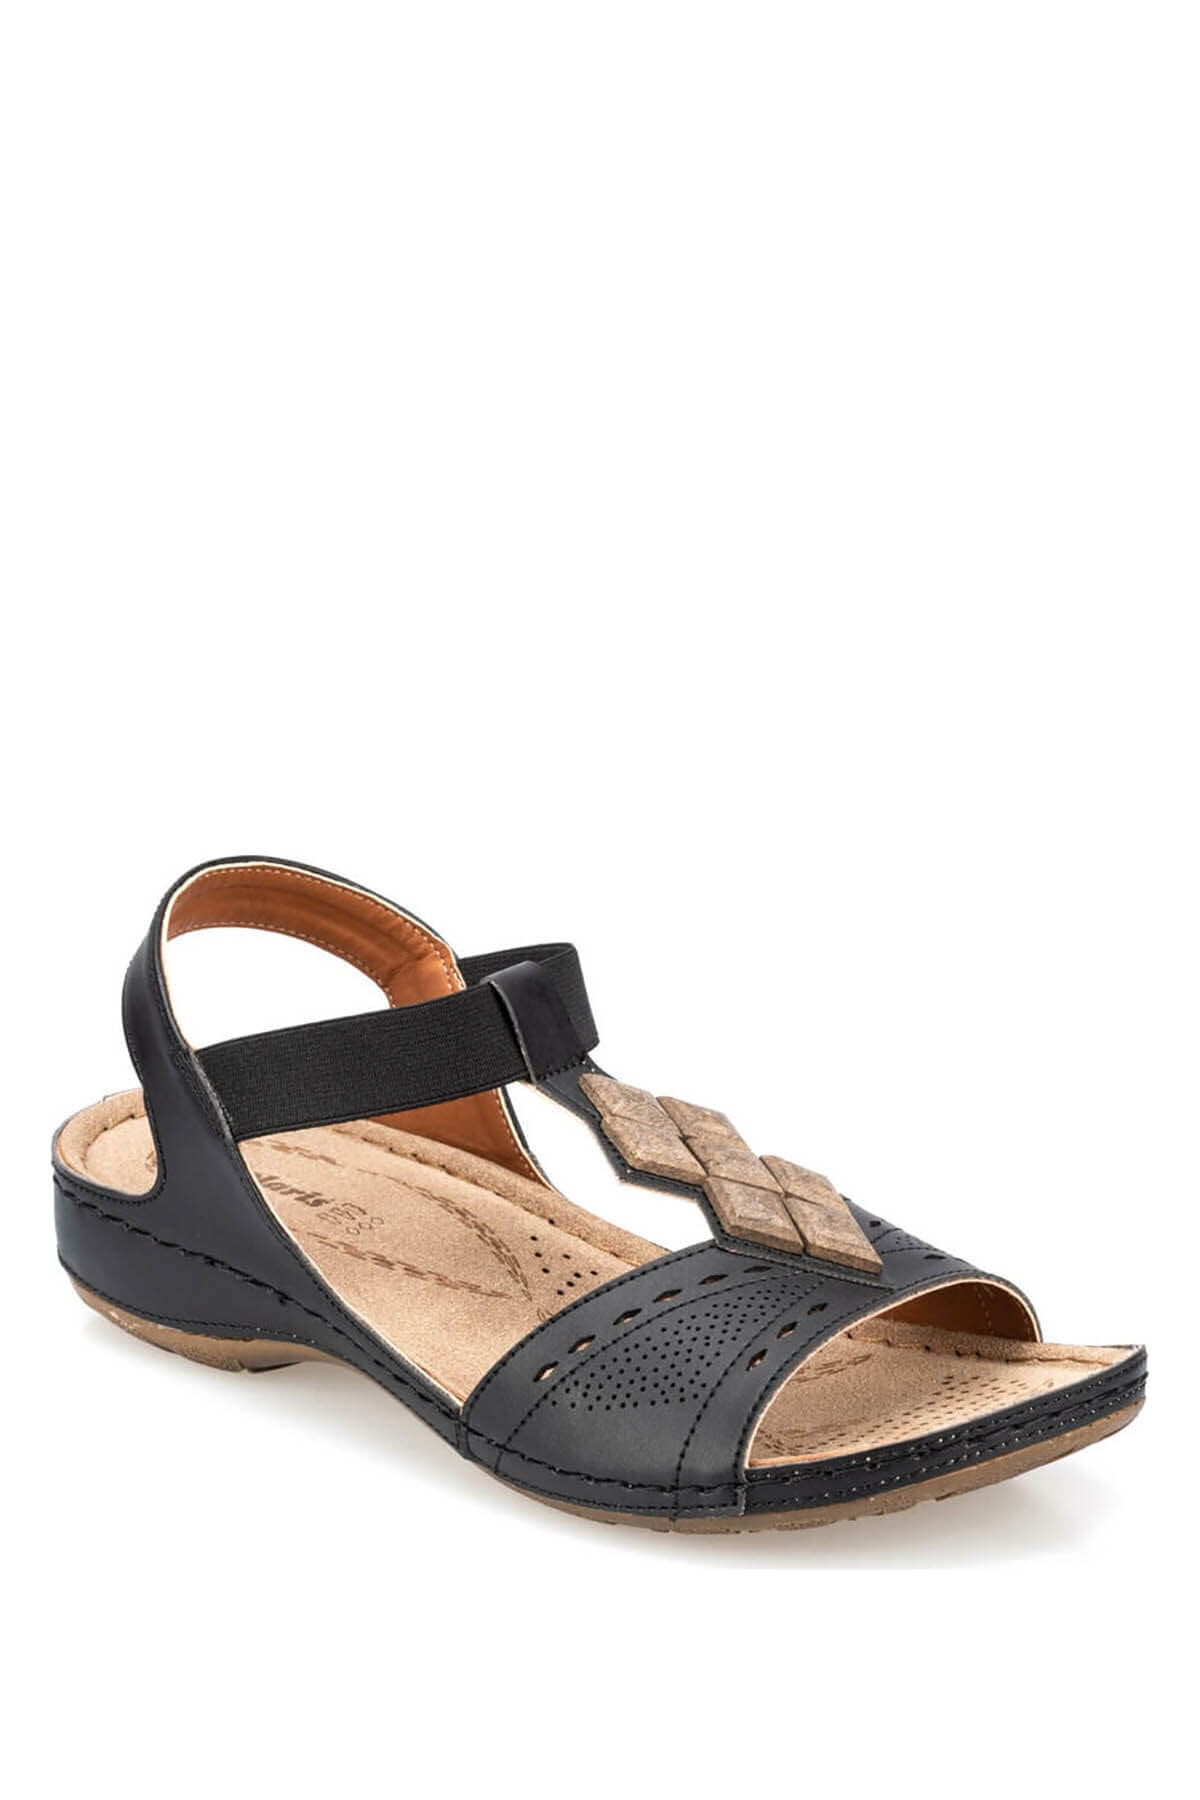 Levně Polaris 91.157364.z Women's Sandals